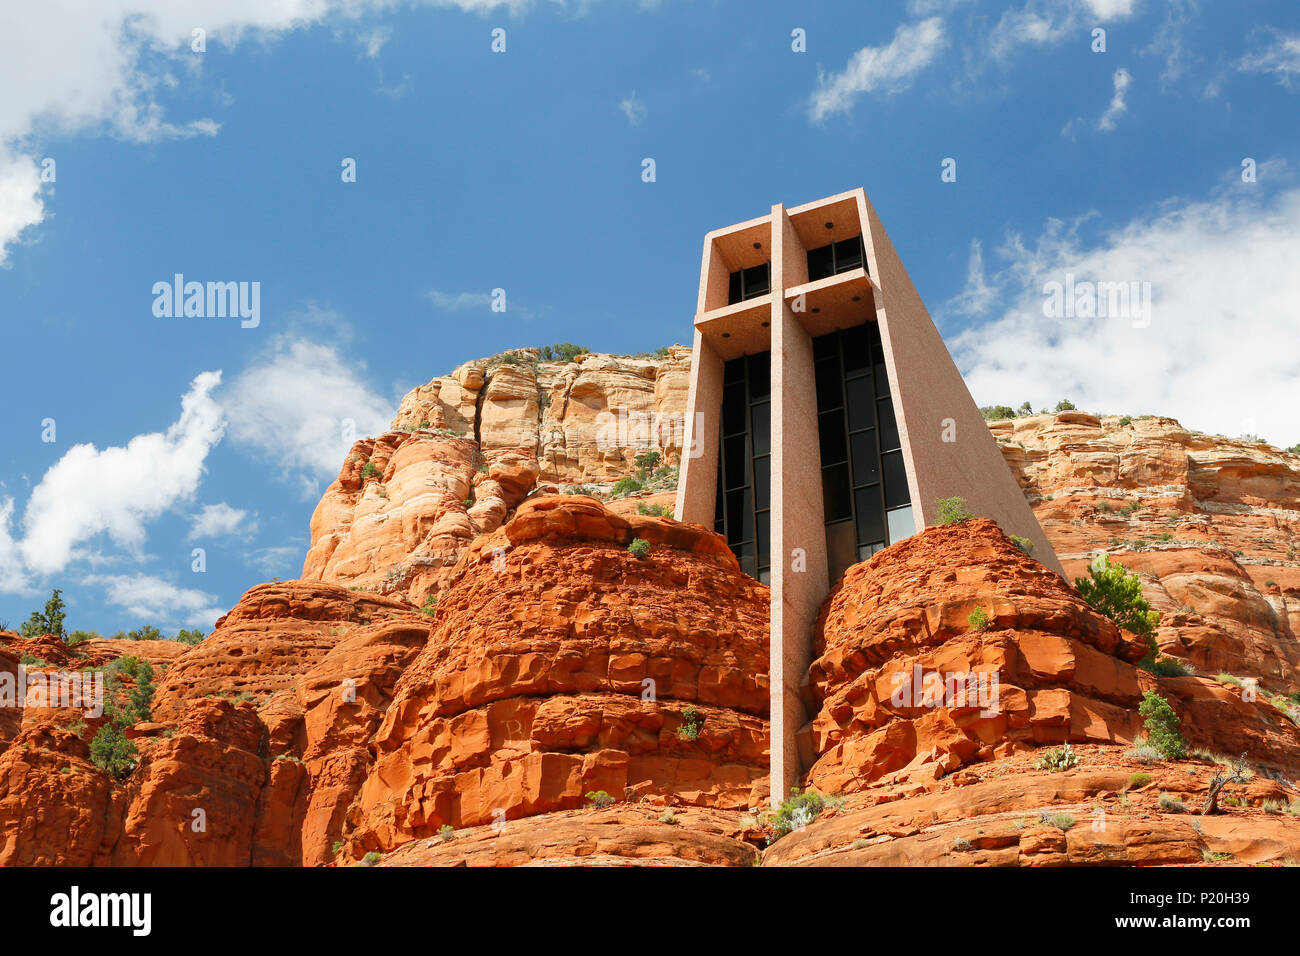 USA. Arizona. Sedona. Chapel of Holy Cross. Stock Photo